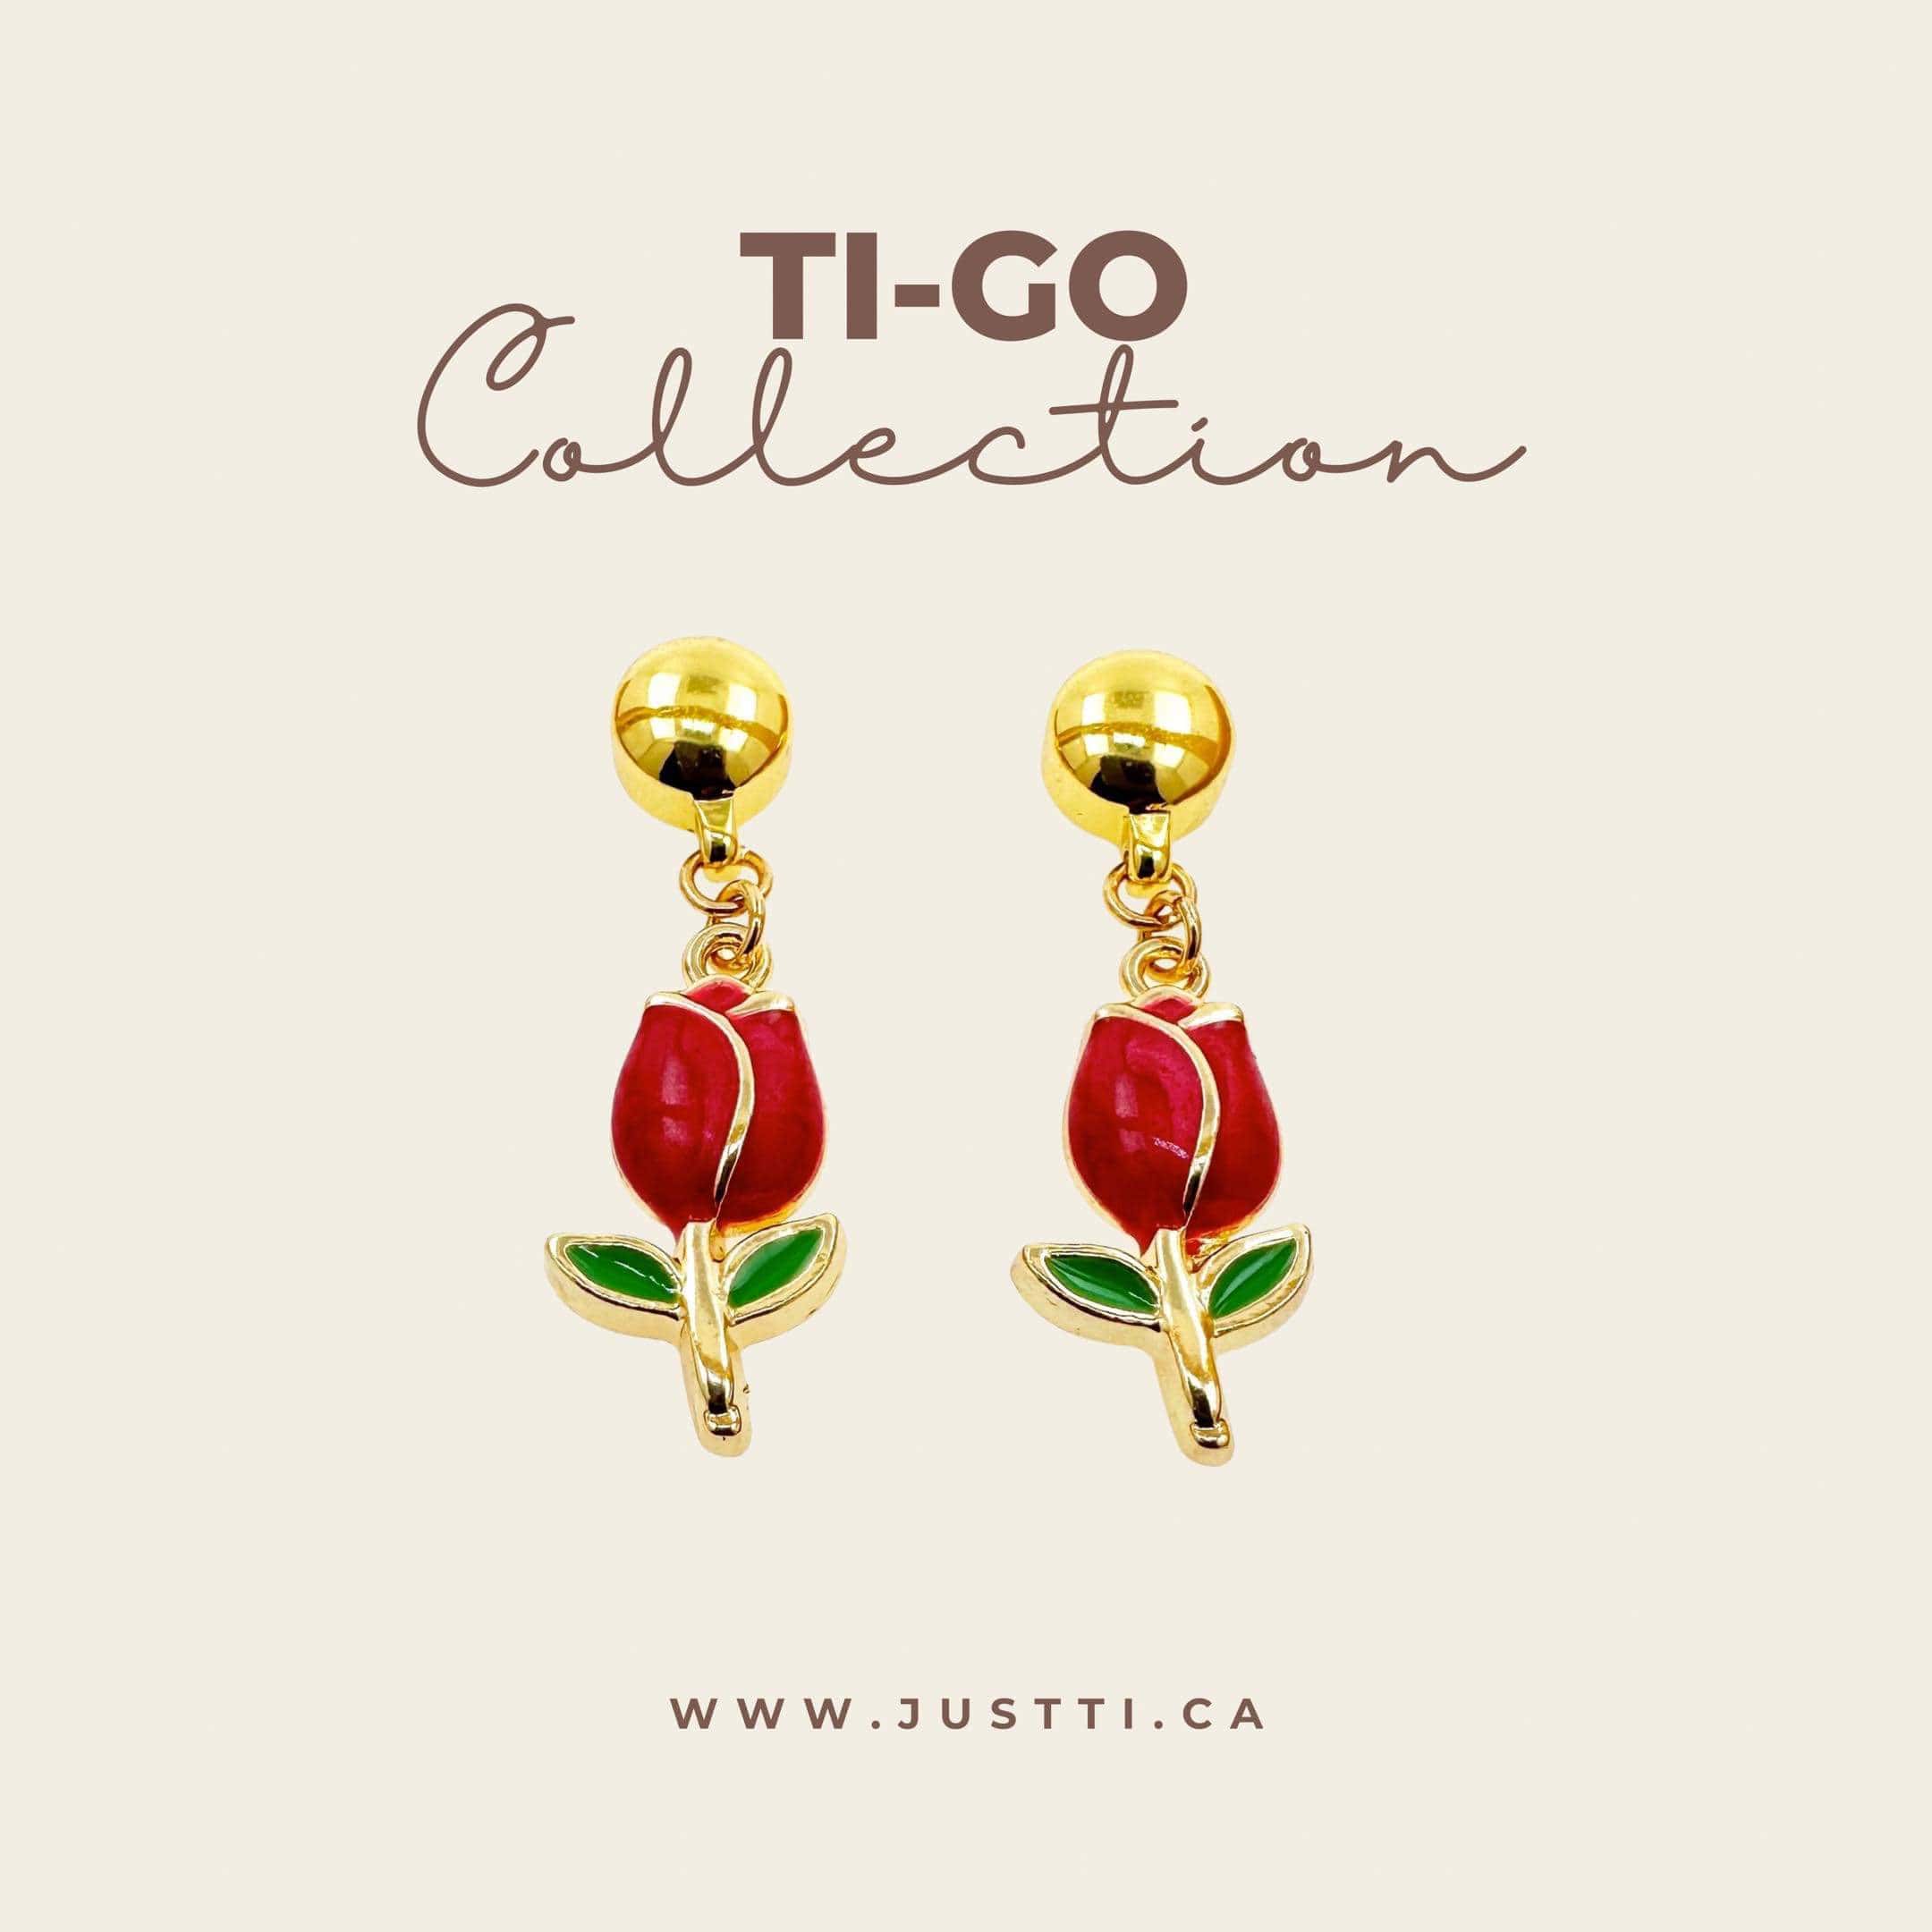 Ti-Go Tulip earrings